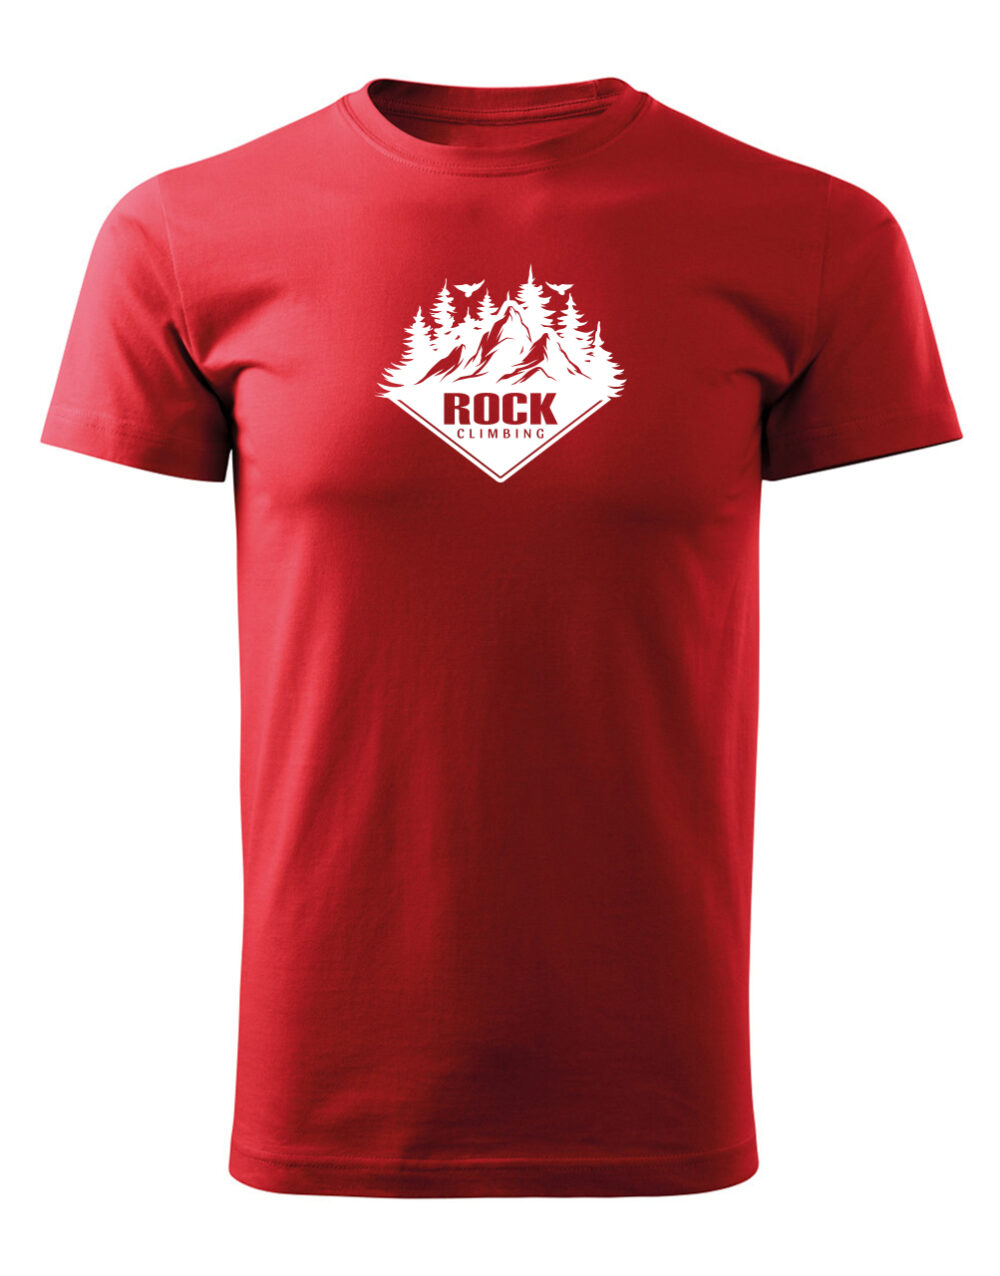 Pánské tričko s potiskem Rock climbing červená